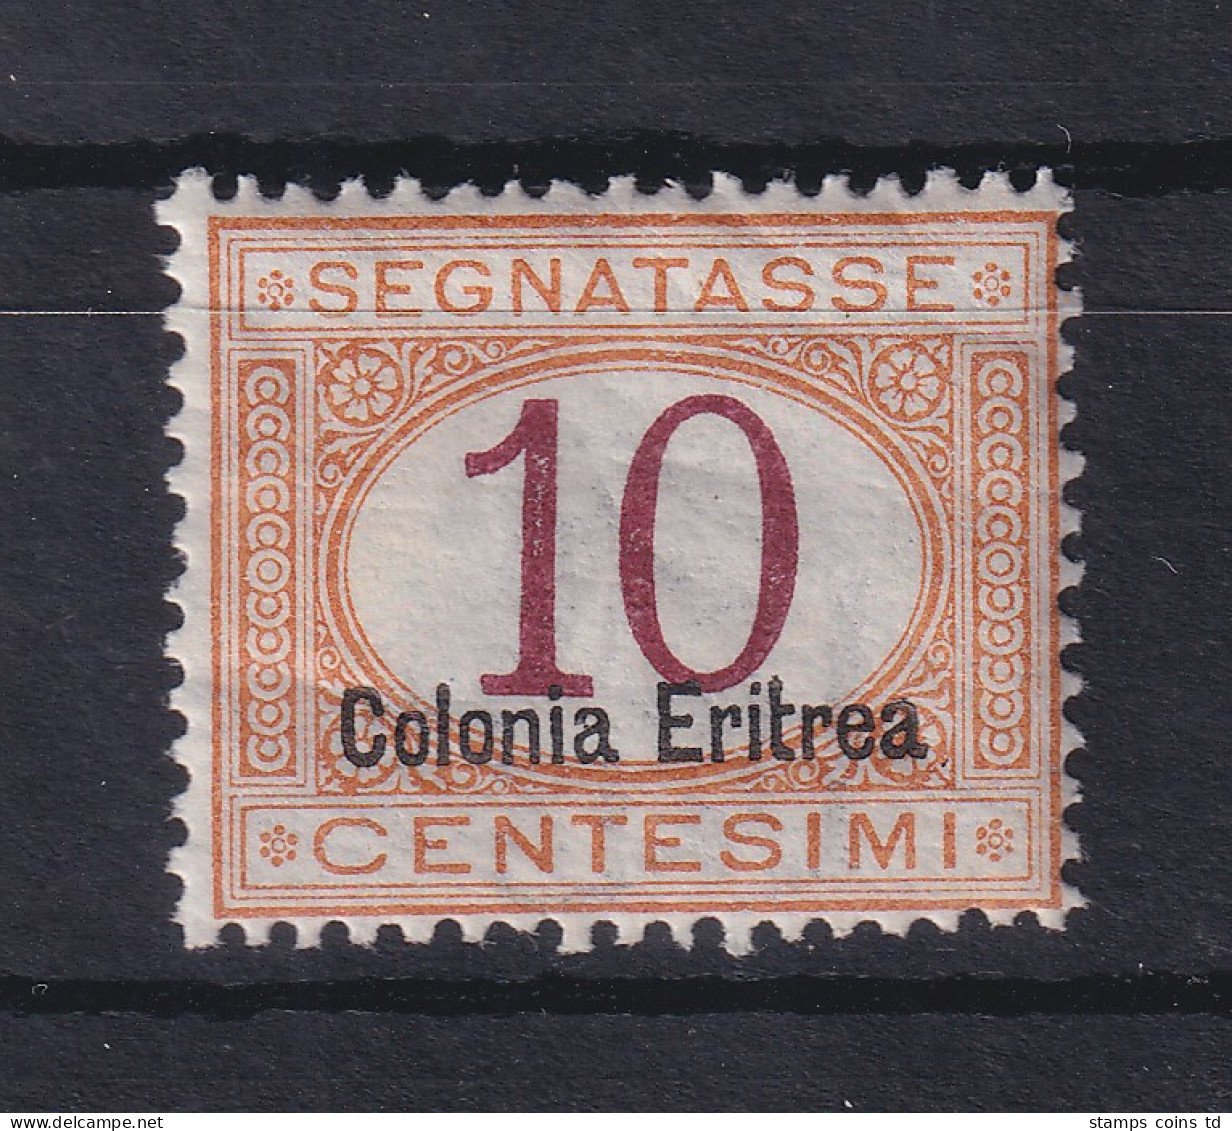 Italienisch-Eritrea 1903 Portomarke Aufdruck Unten 10 C. Mi.-Nr. 2 II Ungebr. * - Erythrée